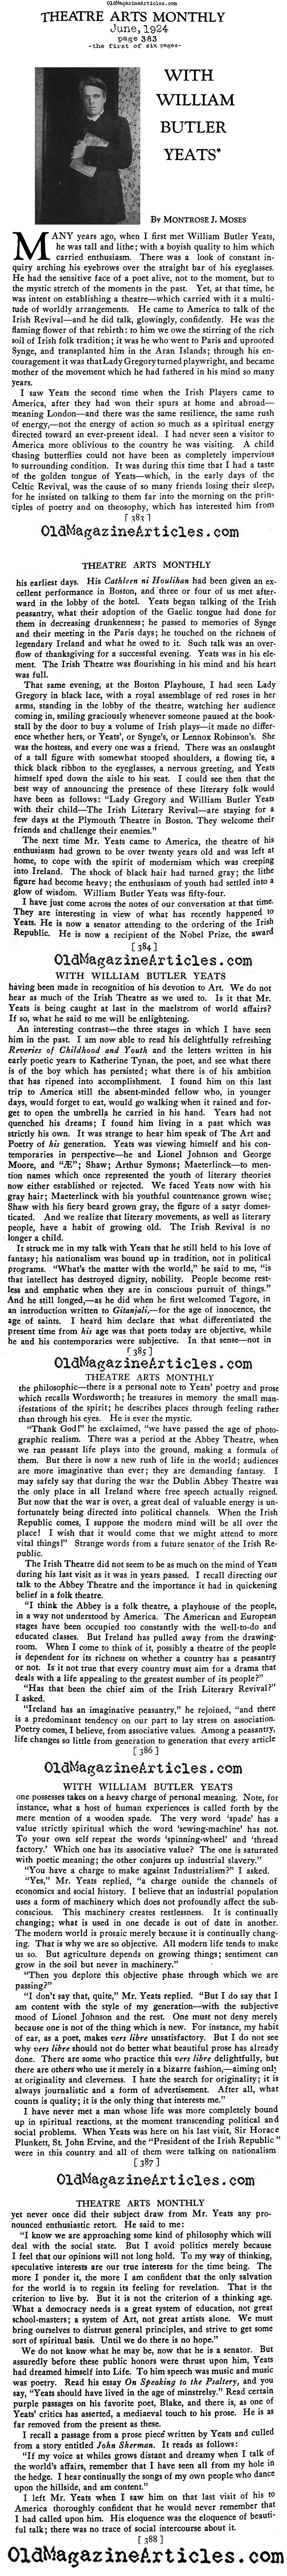 William Butler Yeats Interviewed (Theatre Arts Magazine, 1924)